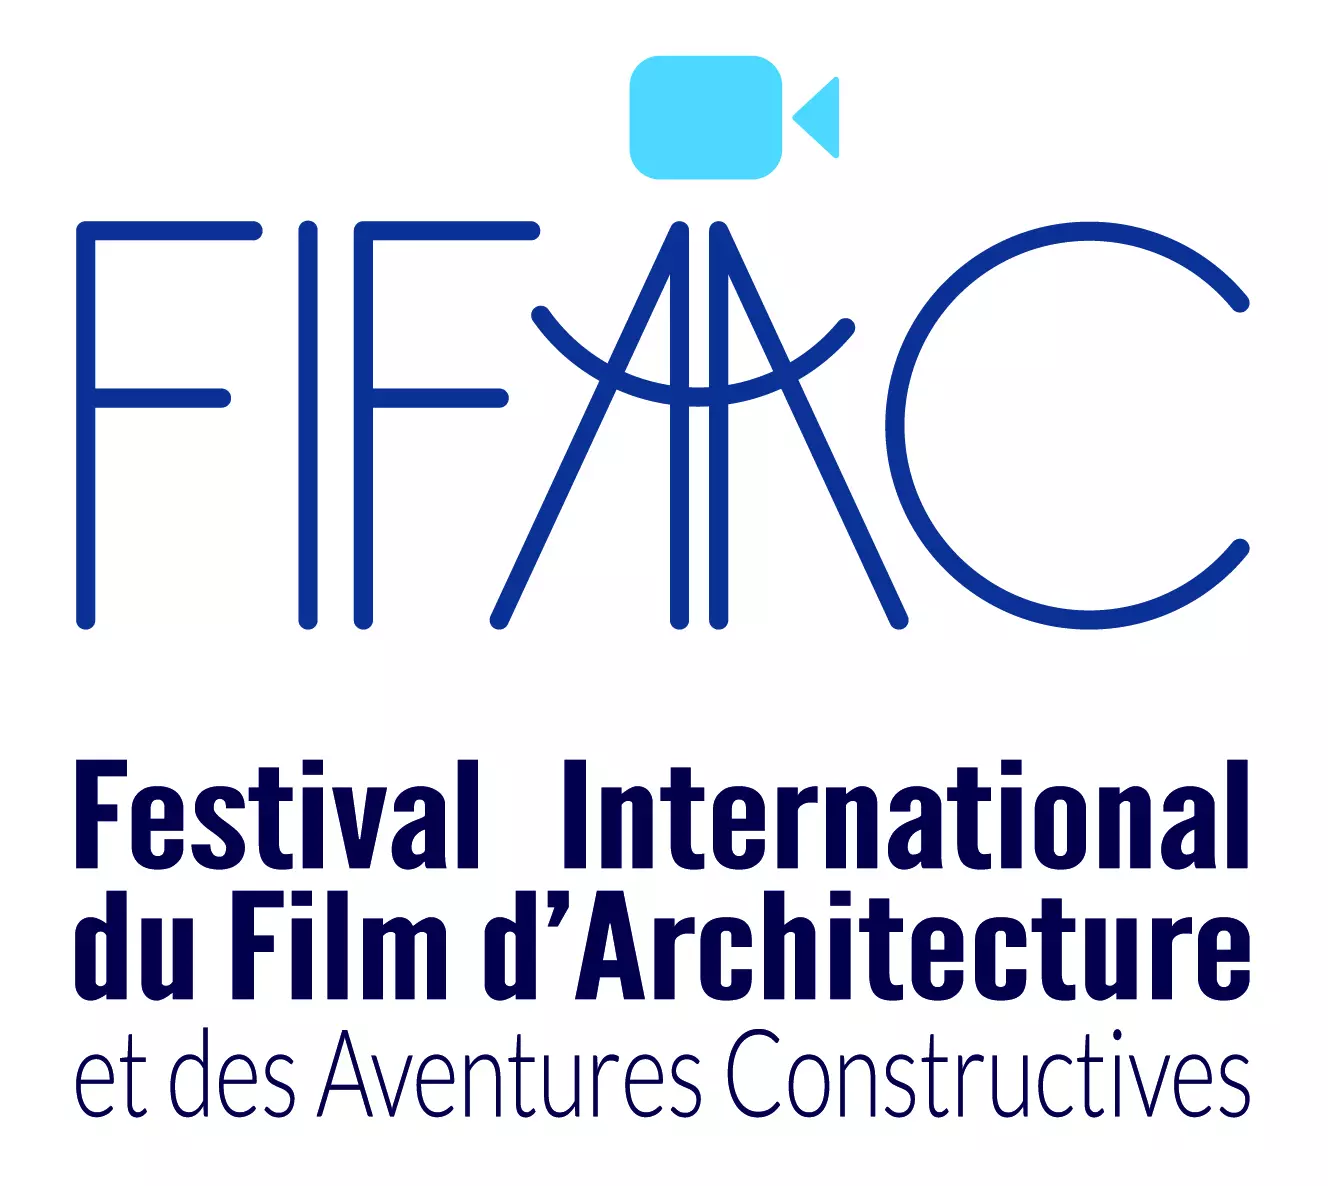 Festivals-Crédits : fifaac